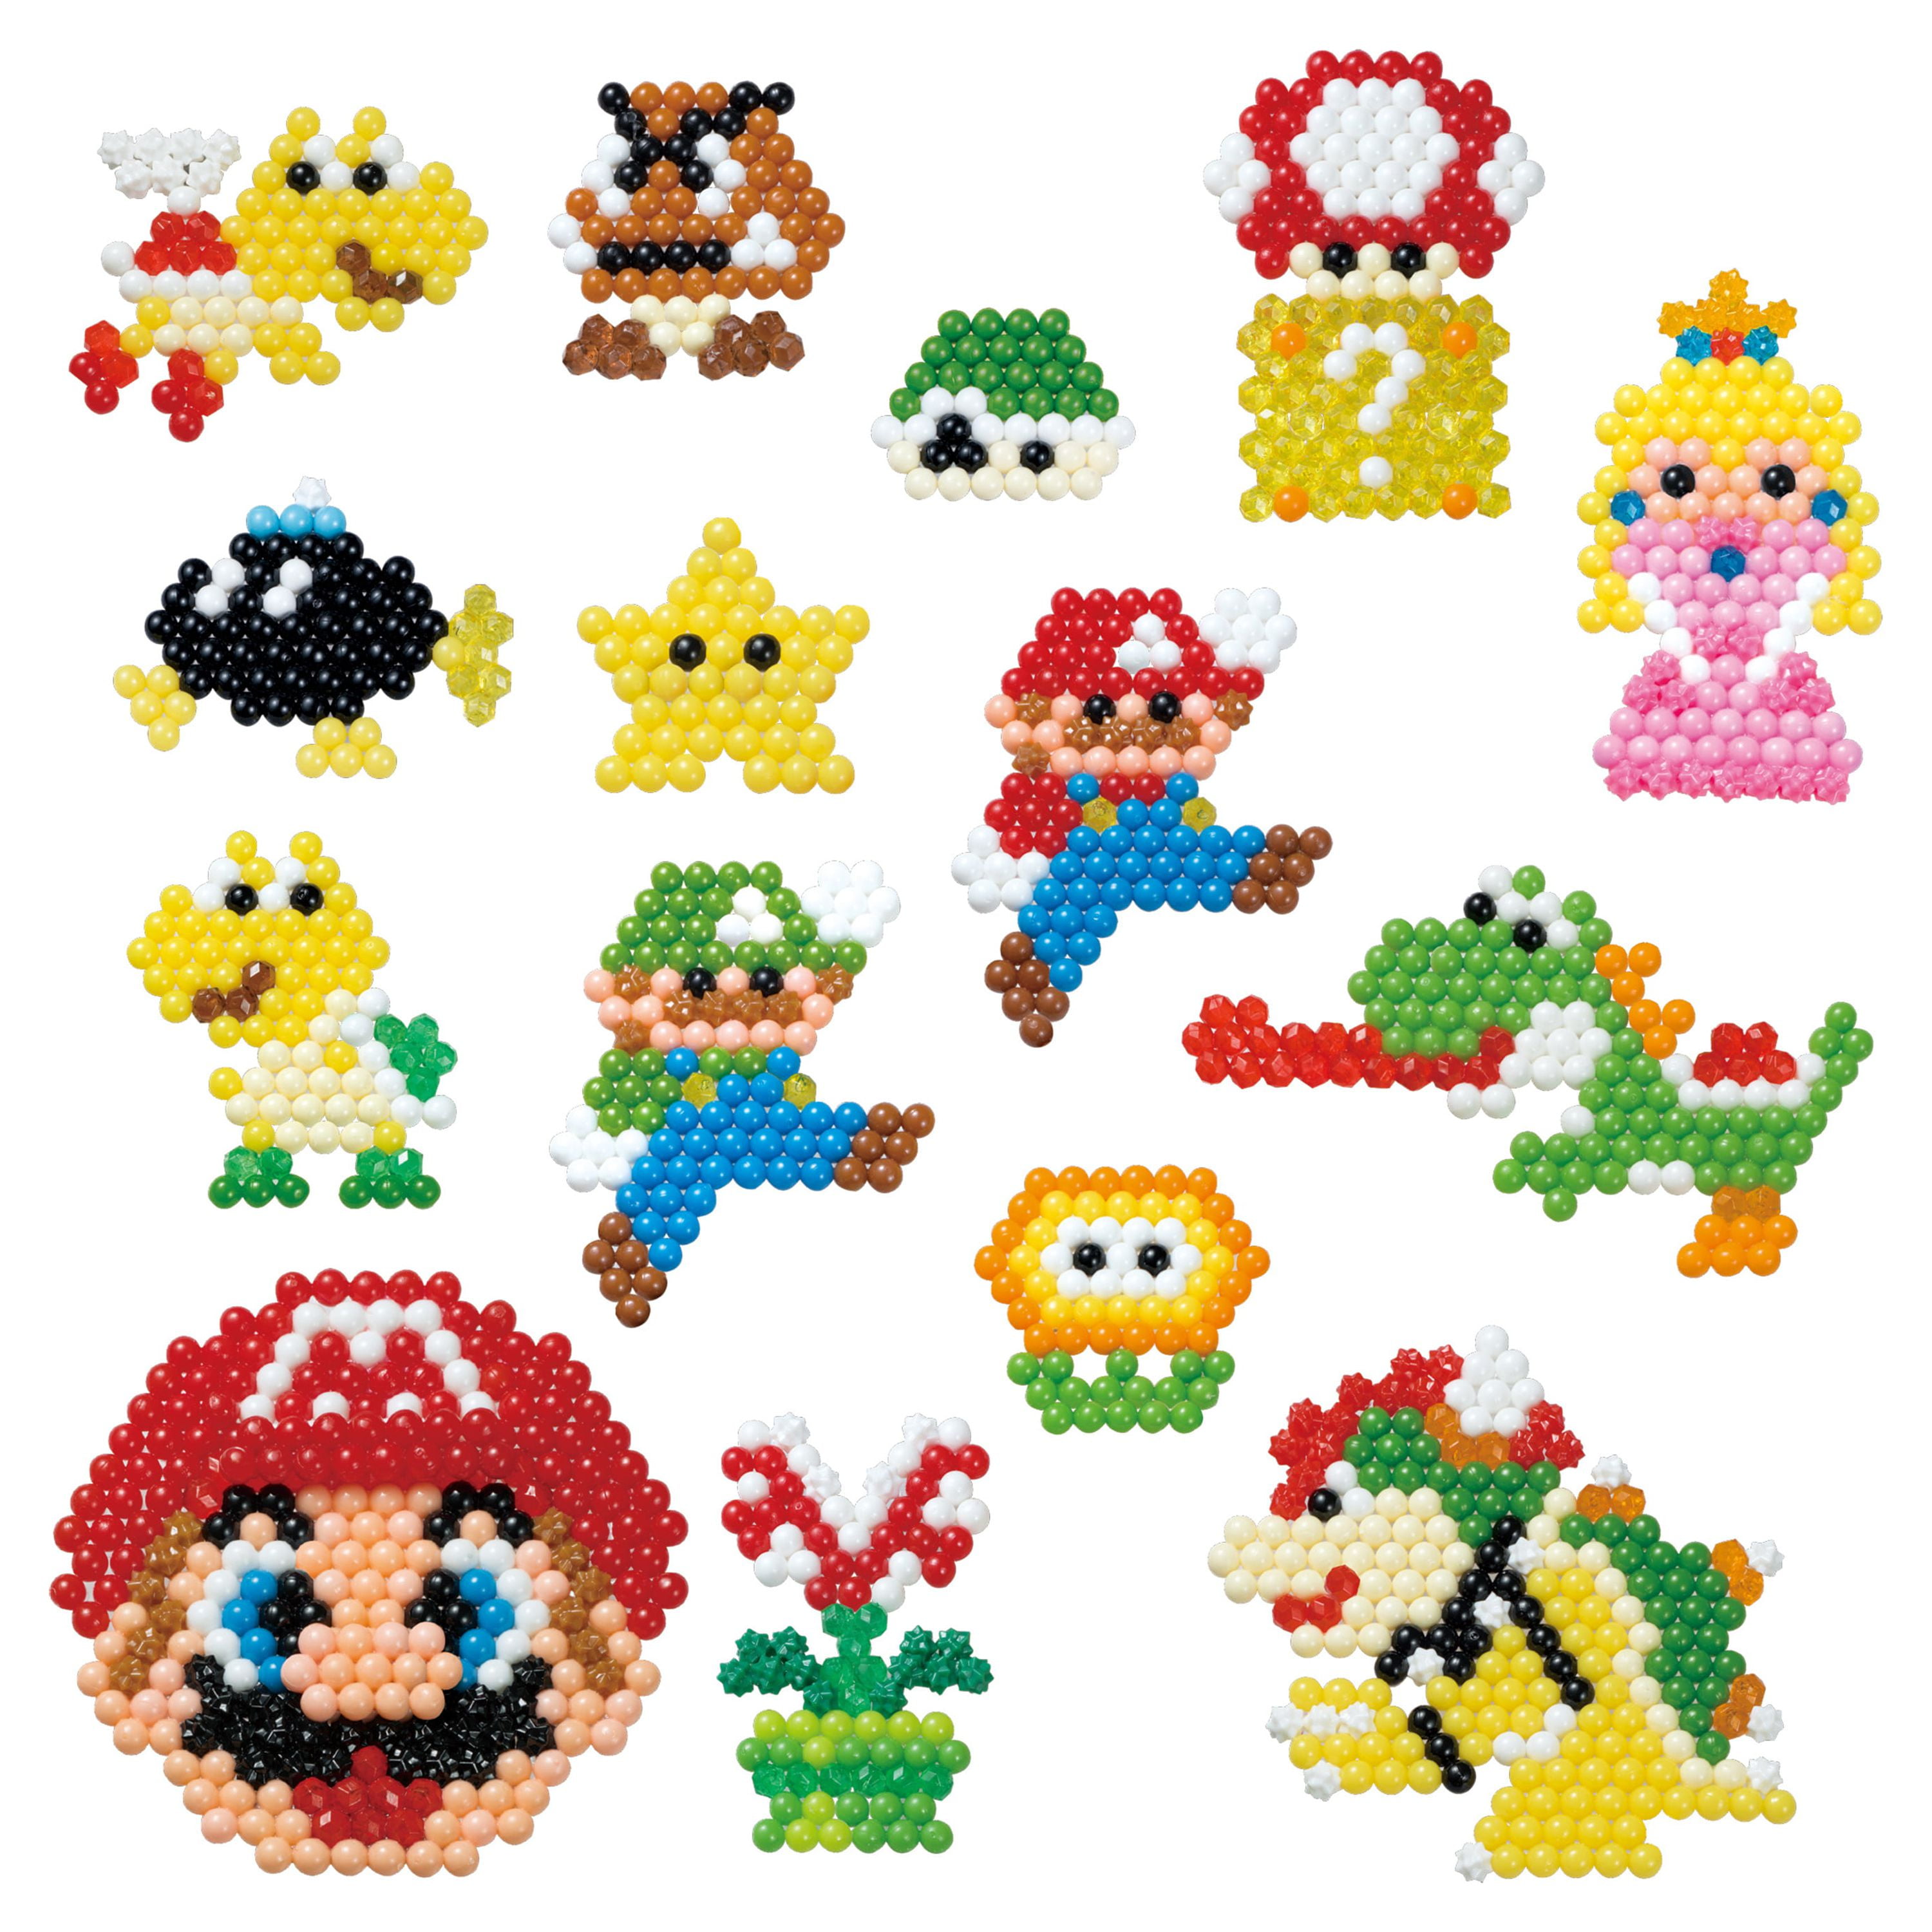 Perles Aquabeads : La box Super Mario - Jeux et jouets Aquabeads